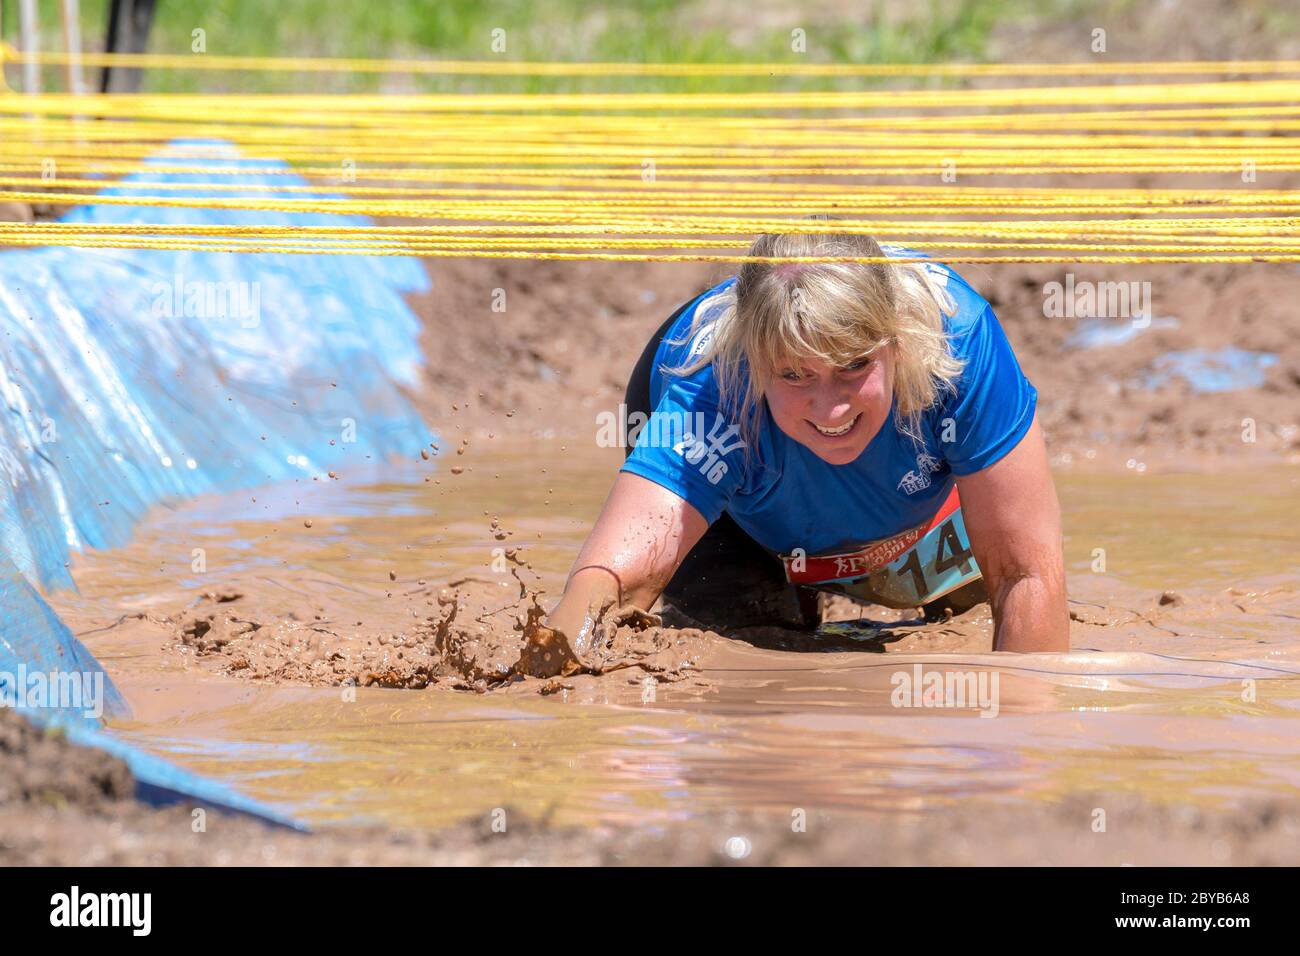 Poley Mountain, New Brunswick, Canadá - 10 de junio de 2017: Participando en la recaudación de fondos anual 'Mud Run for Heart'. Arrastrándose a través del barro y el agua. Foto de stock